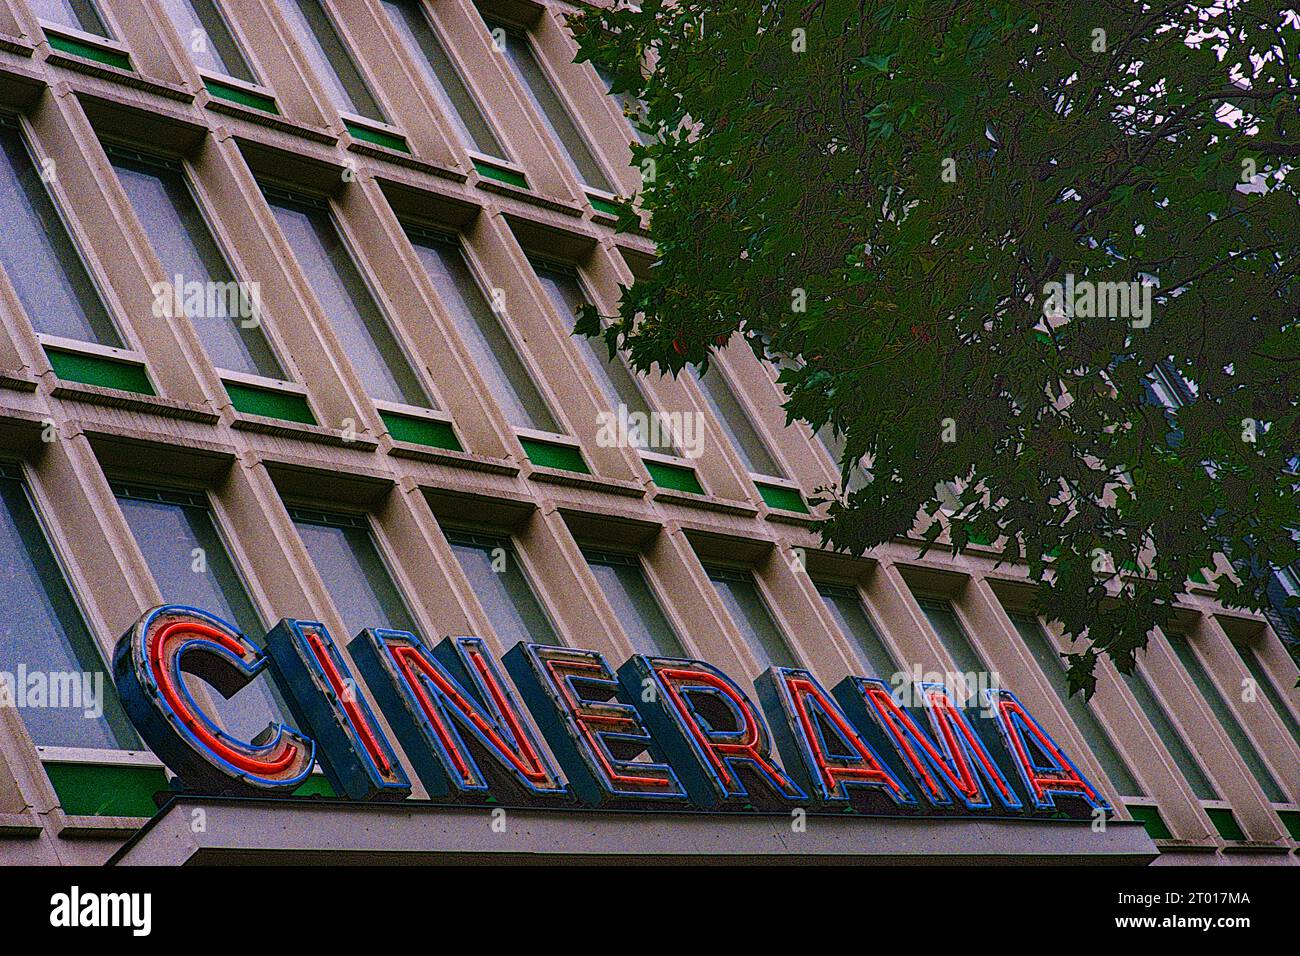 Façade vintage et rétro avec entrée et signe du nom du cinéma et du théâtre Cinerama. Rotterdam, pays-Bas. Photo prise sur un ancien film Kodak analogique. Banque D'Images